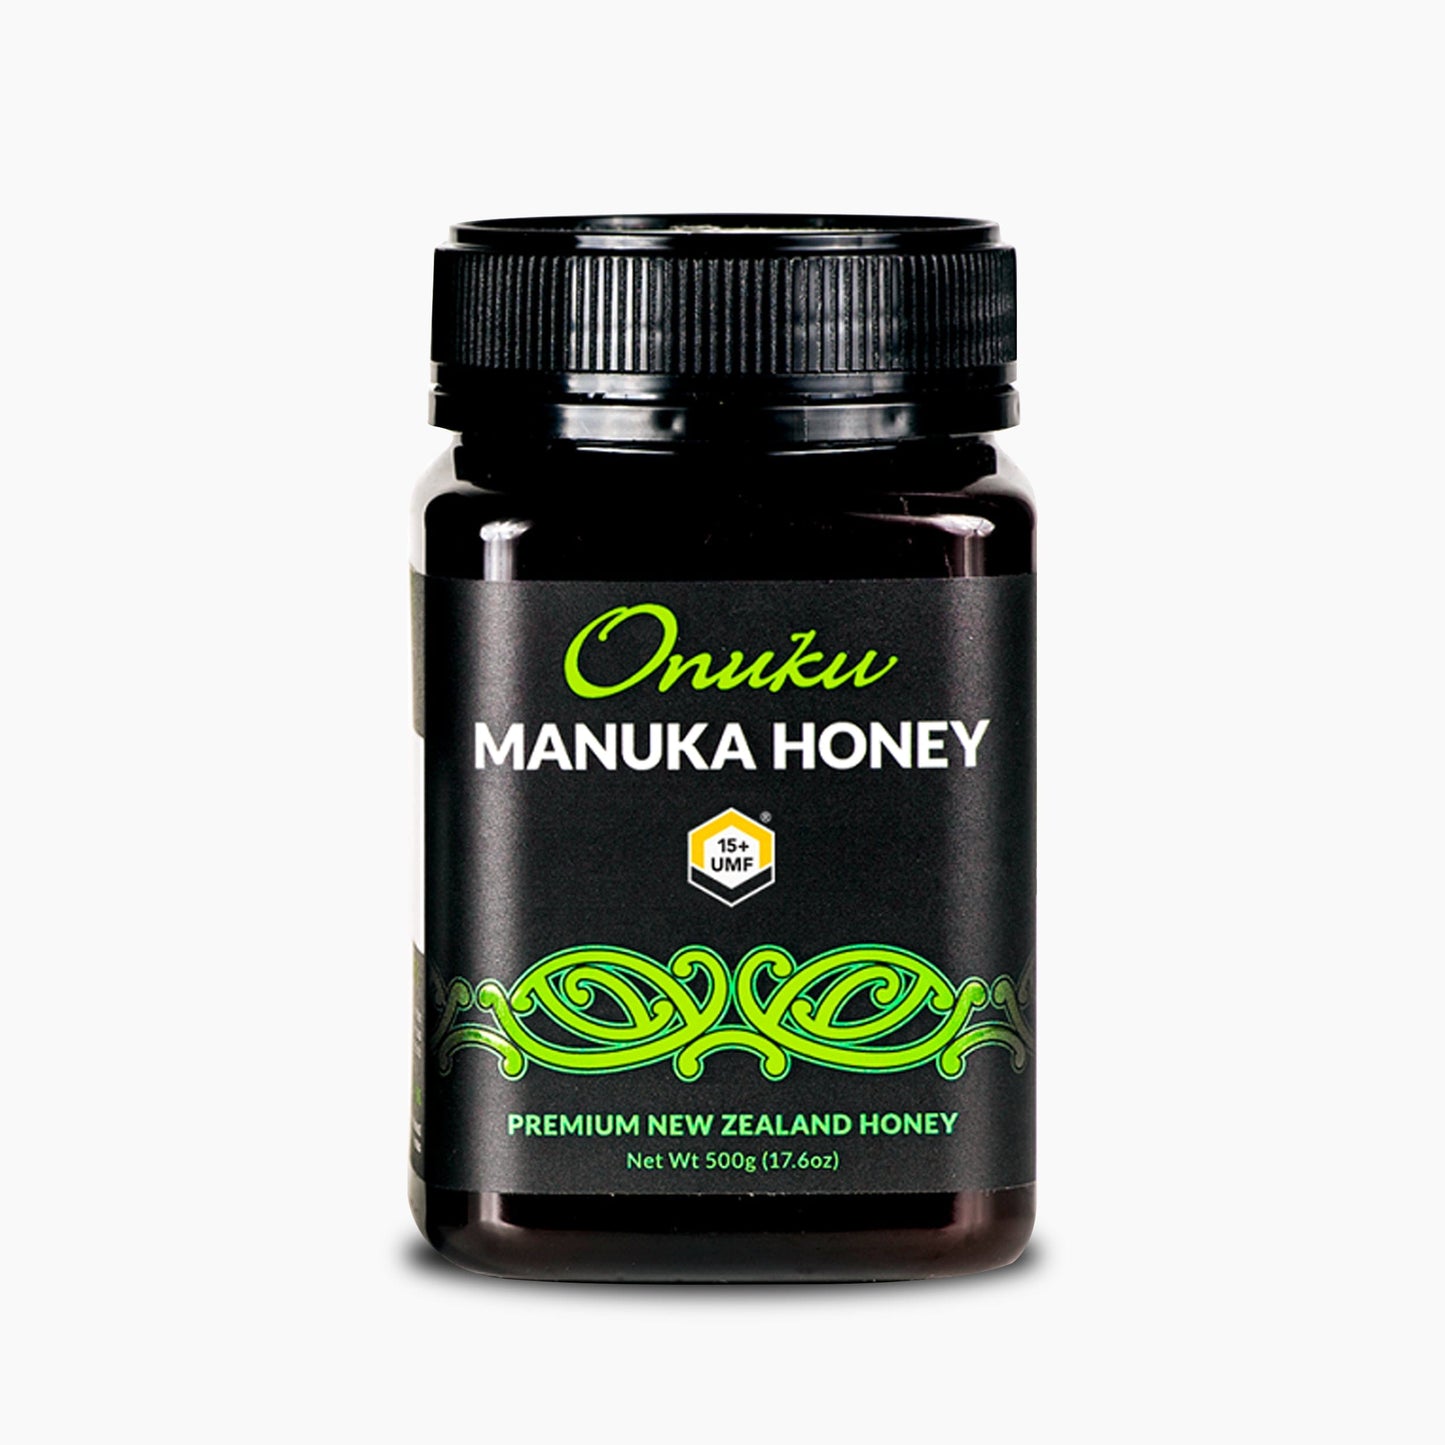 Onuku Manuka Honey UMF 15+ [500g]